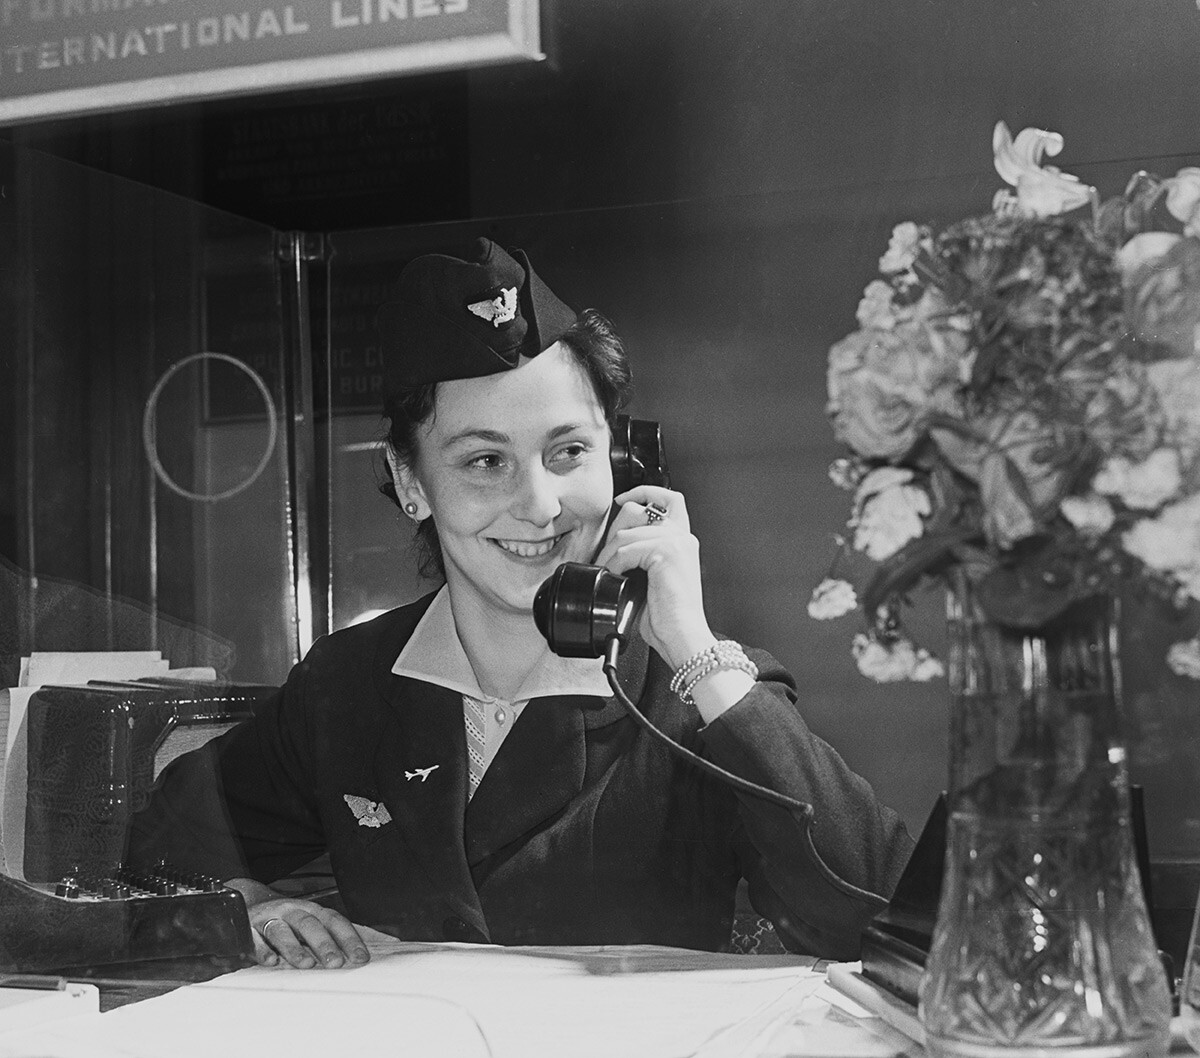 URSS. 1er juillet 1958. Une employée de la compagnie aérienne Aeroflot répond à un appel téléphonique.